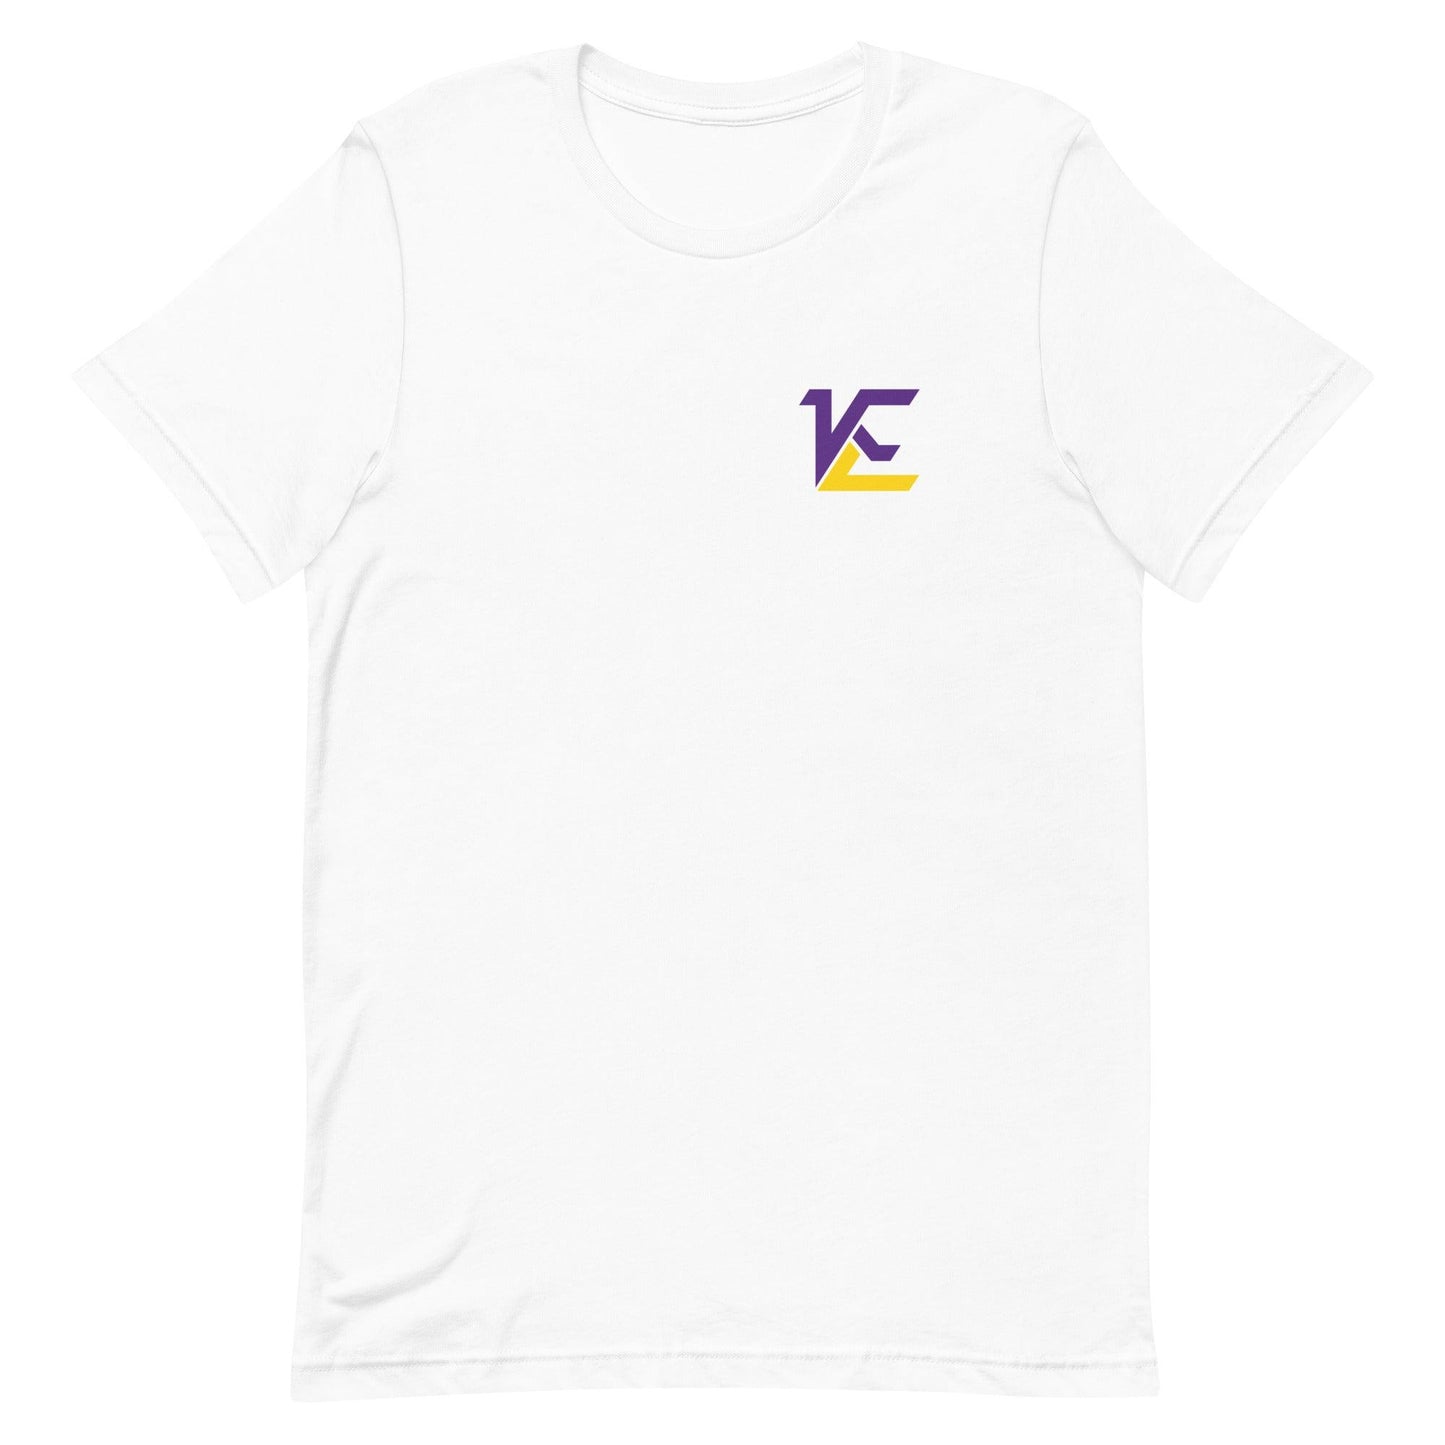 Kamarro Edmonds "Elite" t-shirt - Fan Arch